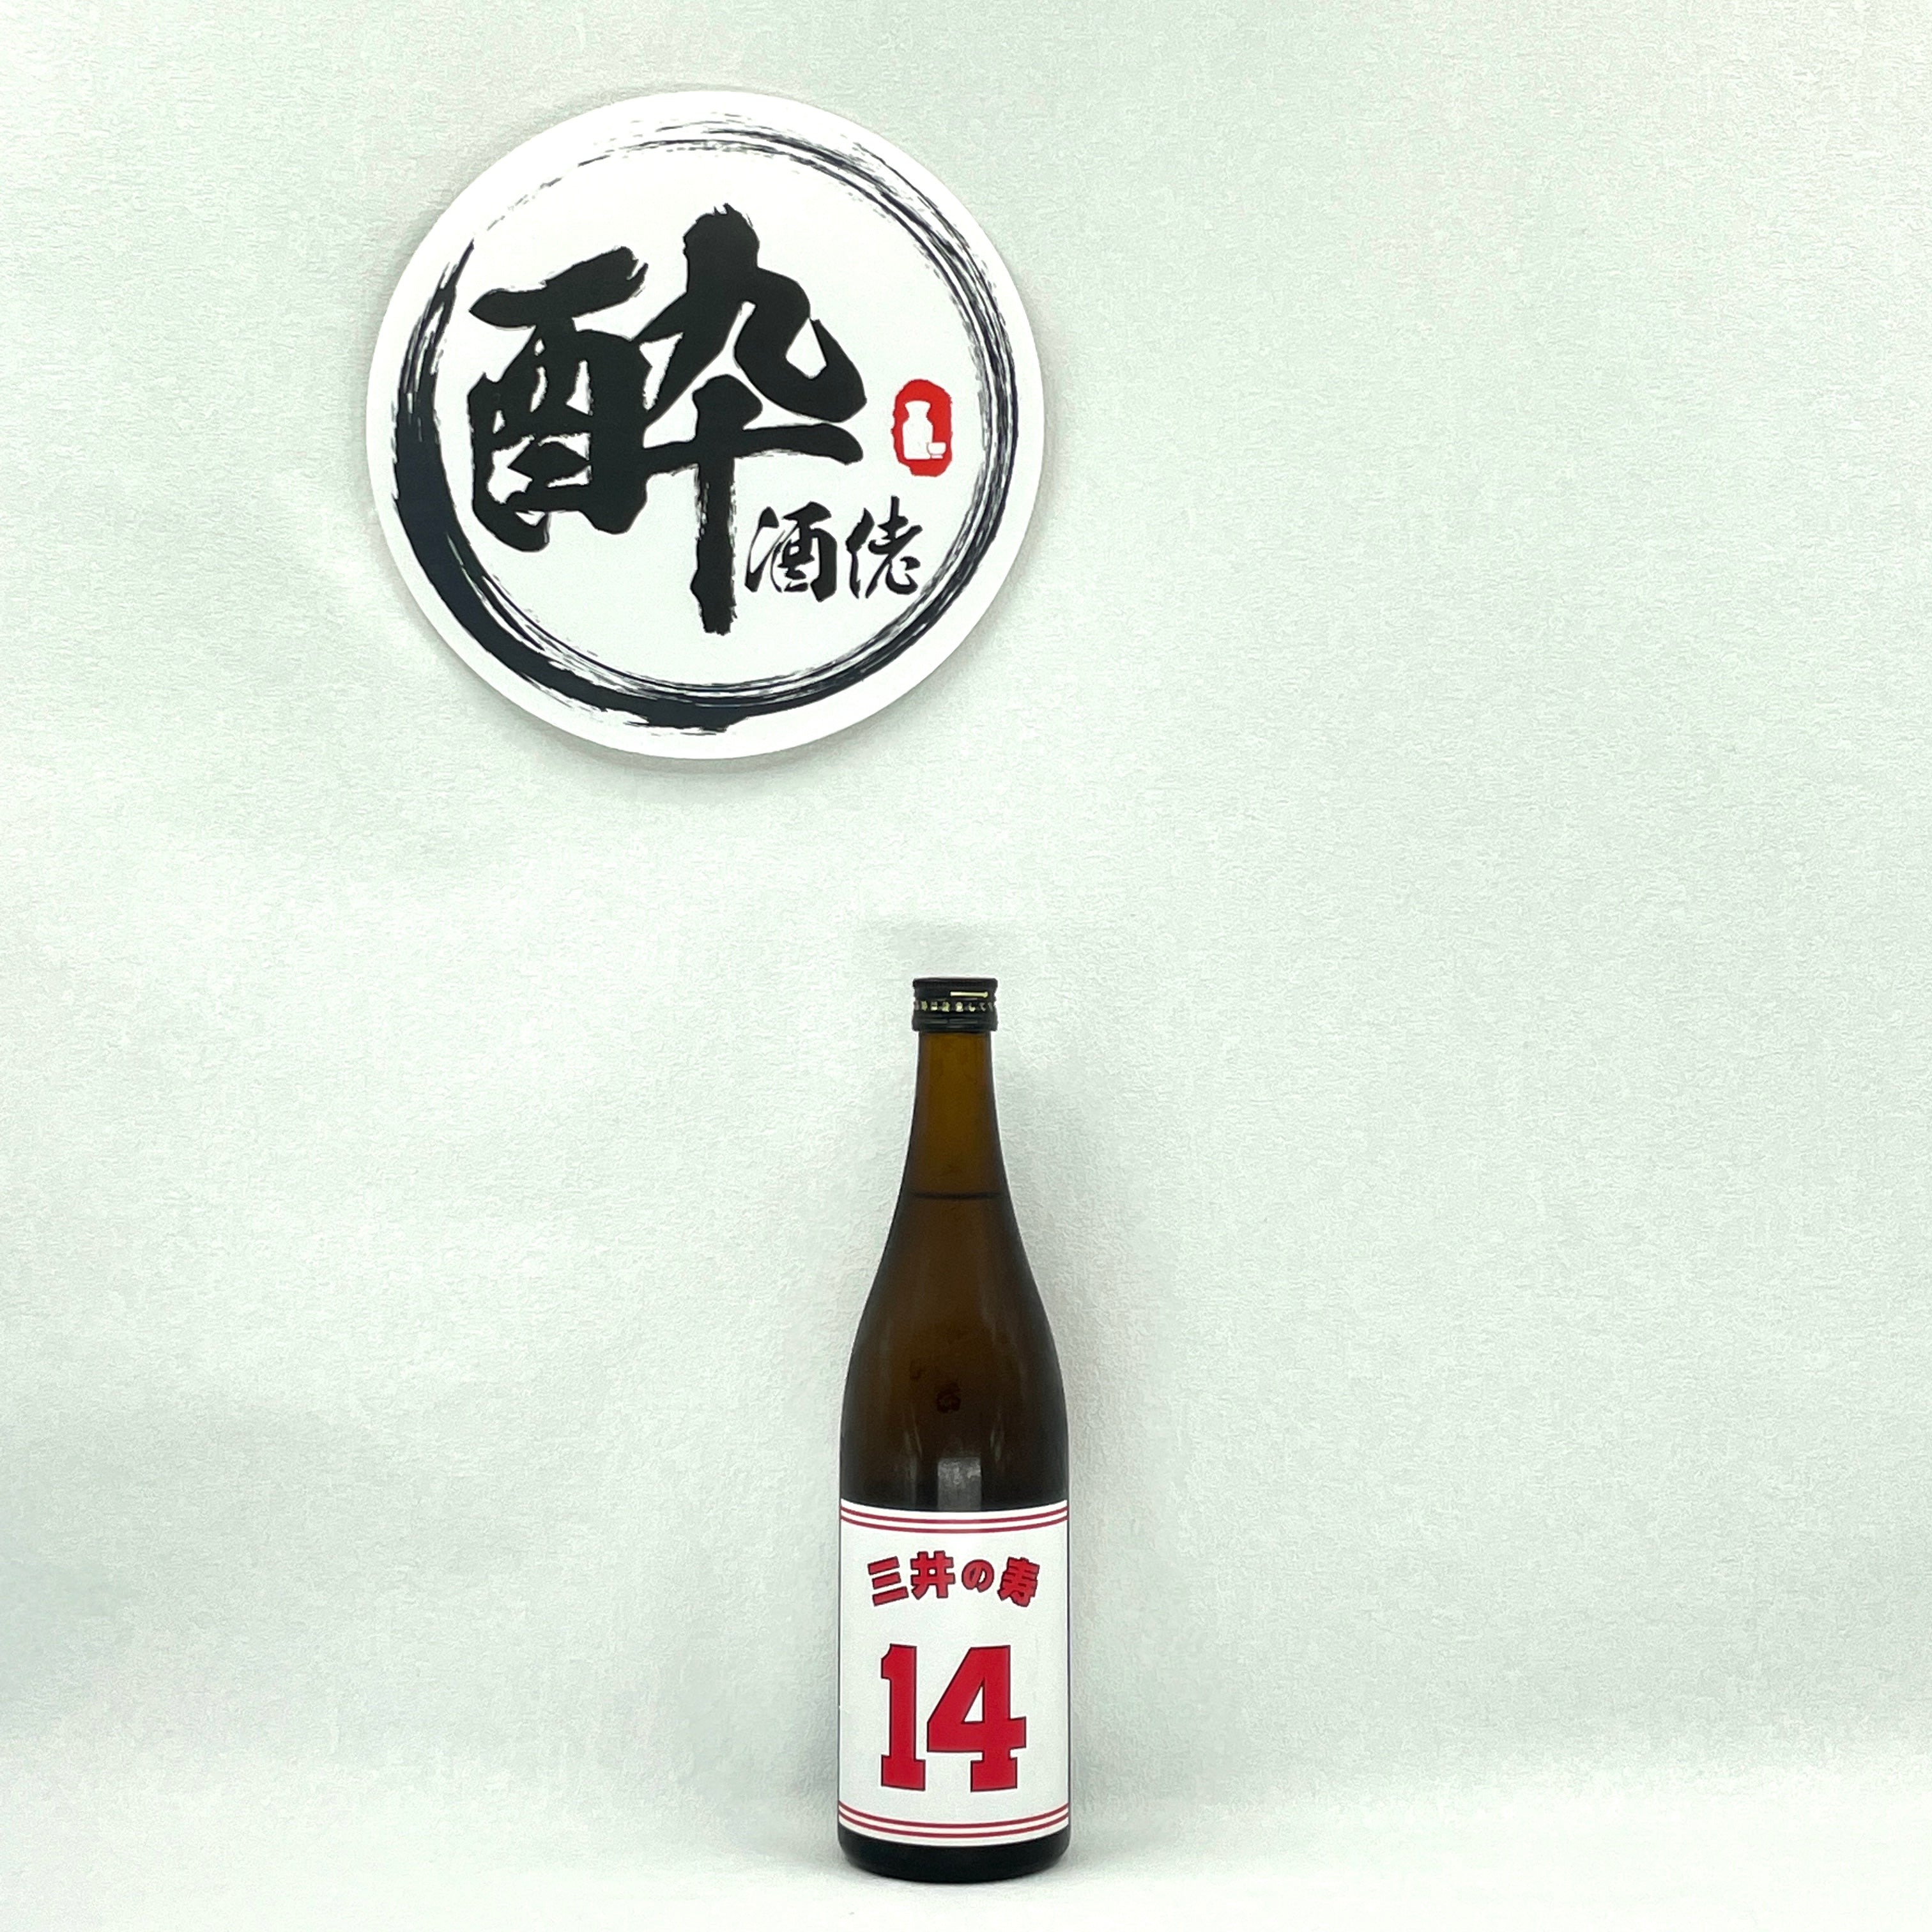 三井の壽(白) 純米吟醸+14 大辛口生酒720ml – 酔。酒佬